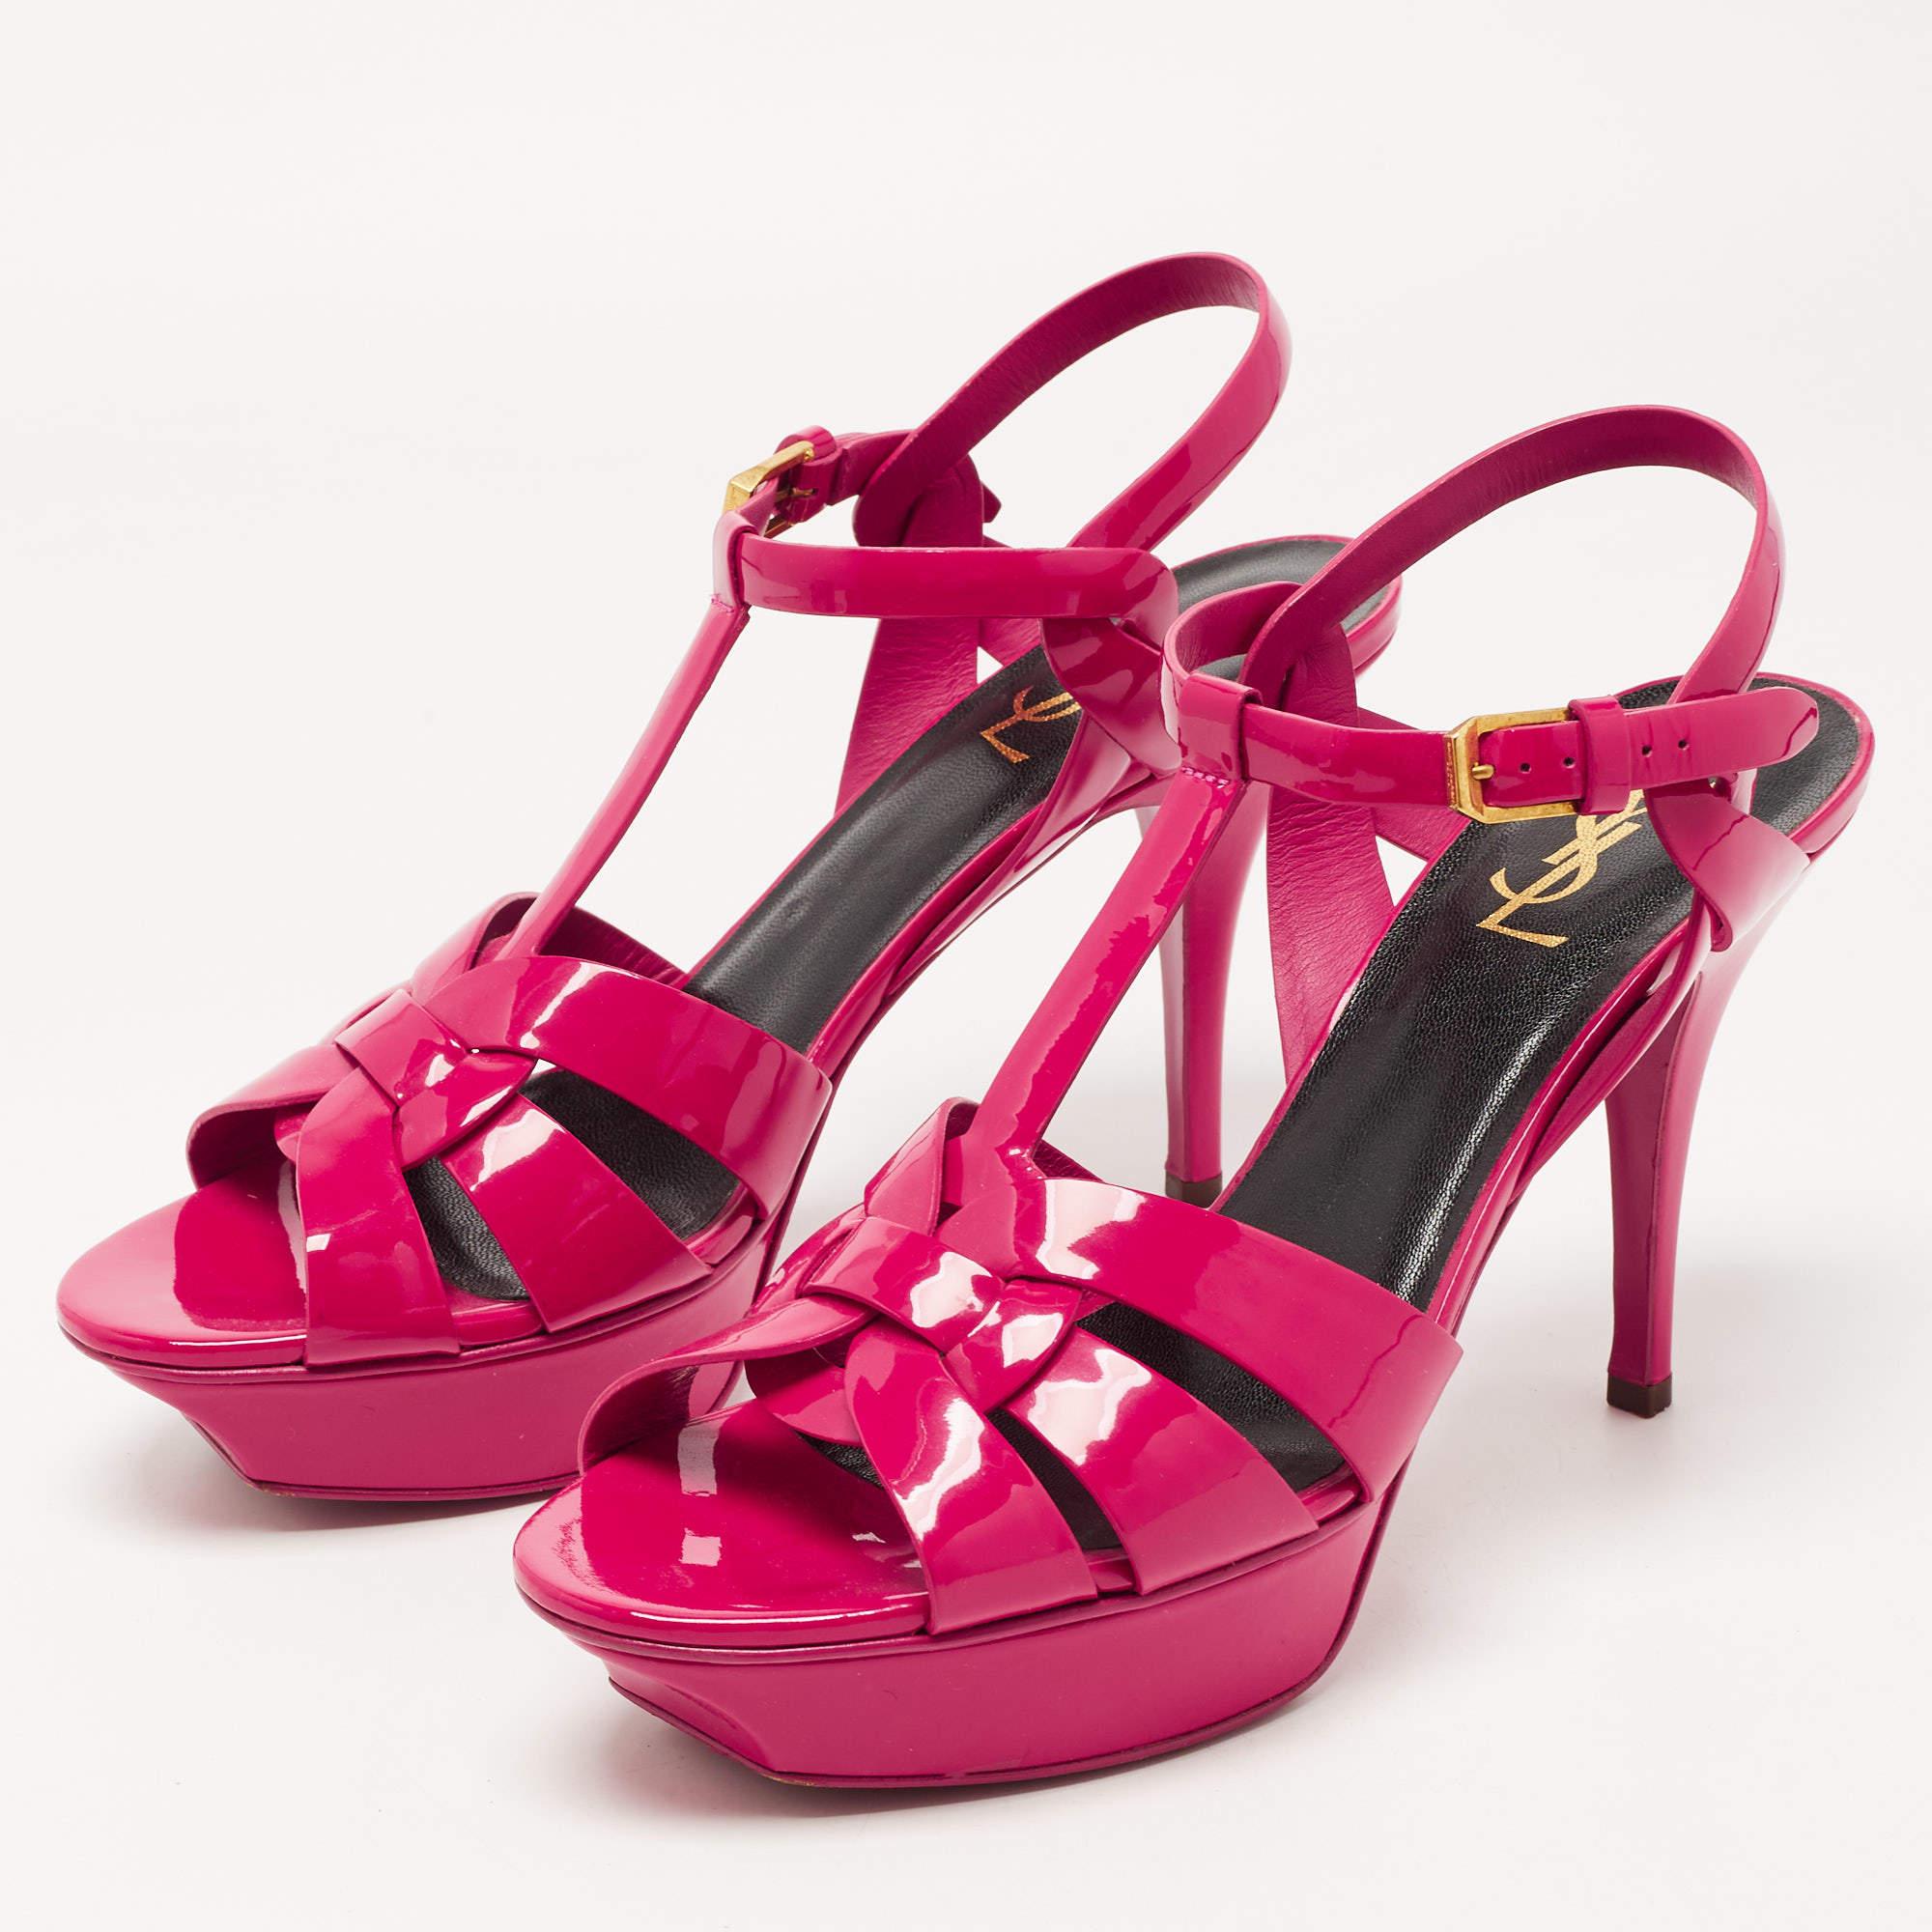 Men's Saint Laurent Pink Patent Leather Tribute Sandals Size 40.5